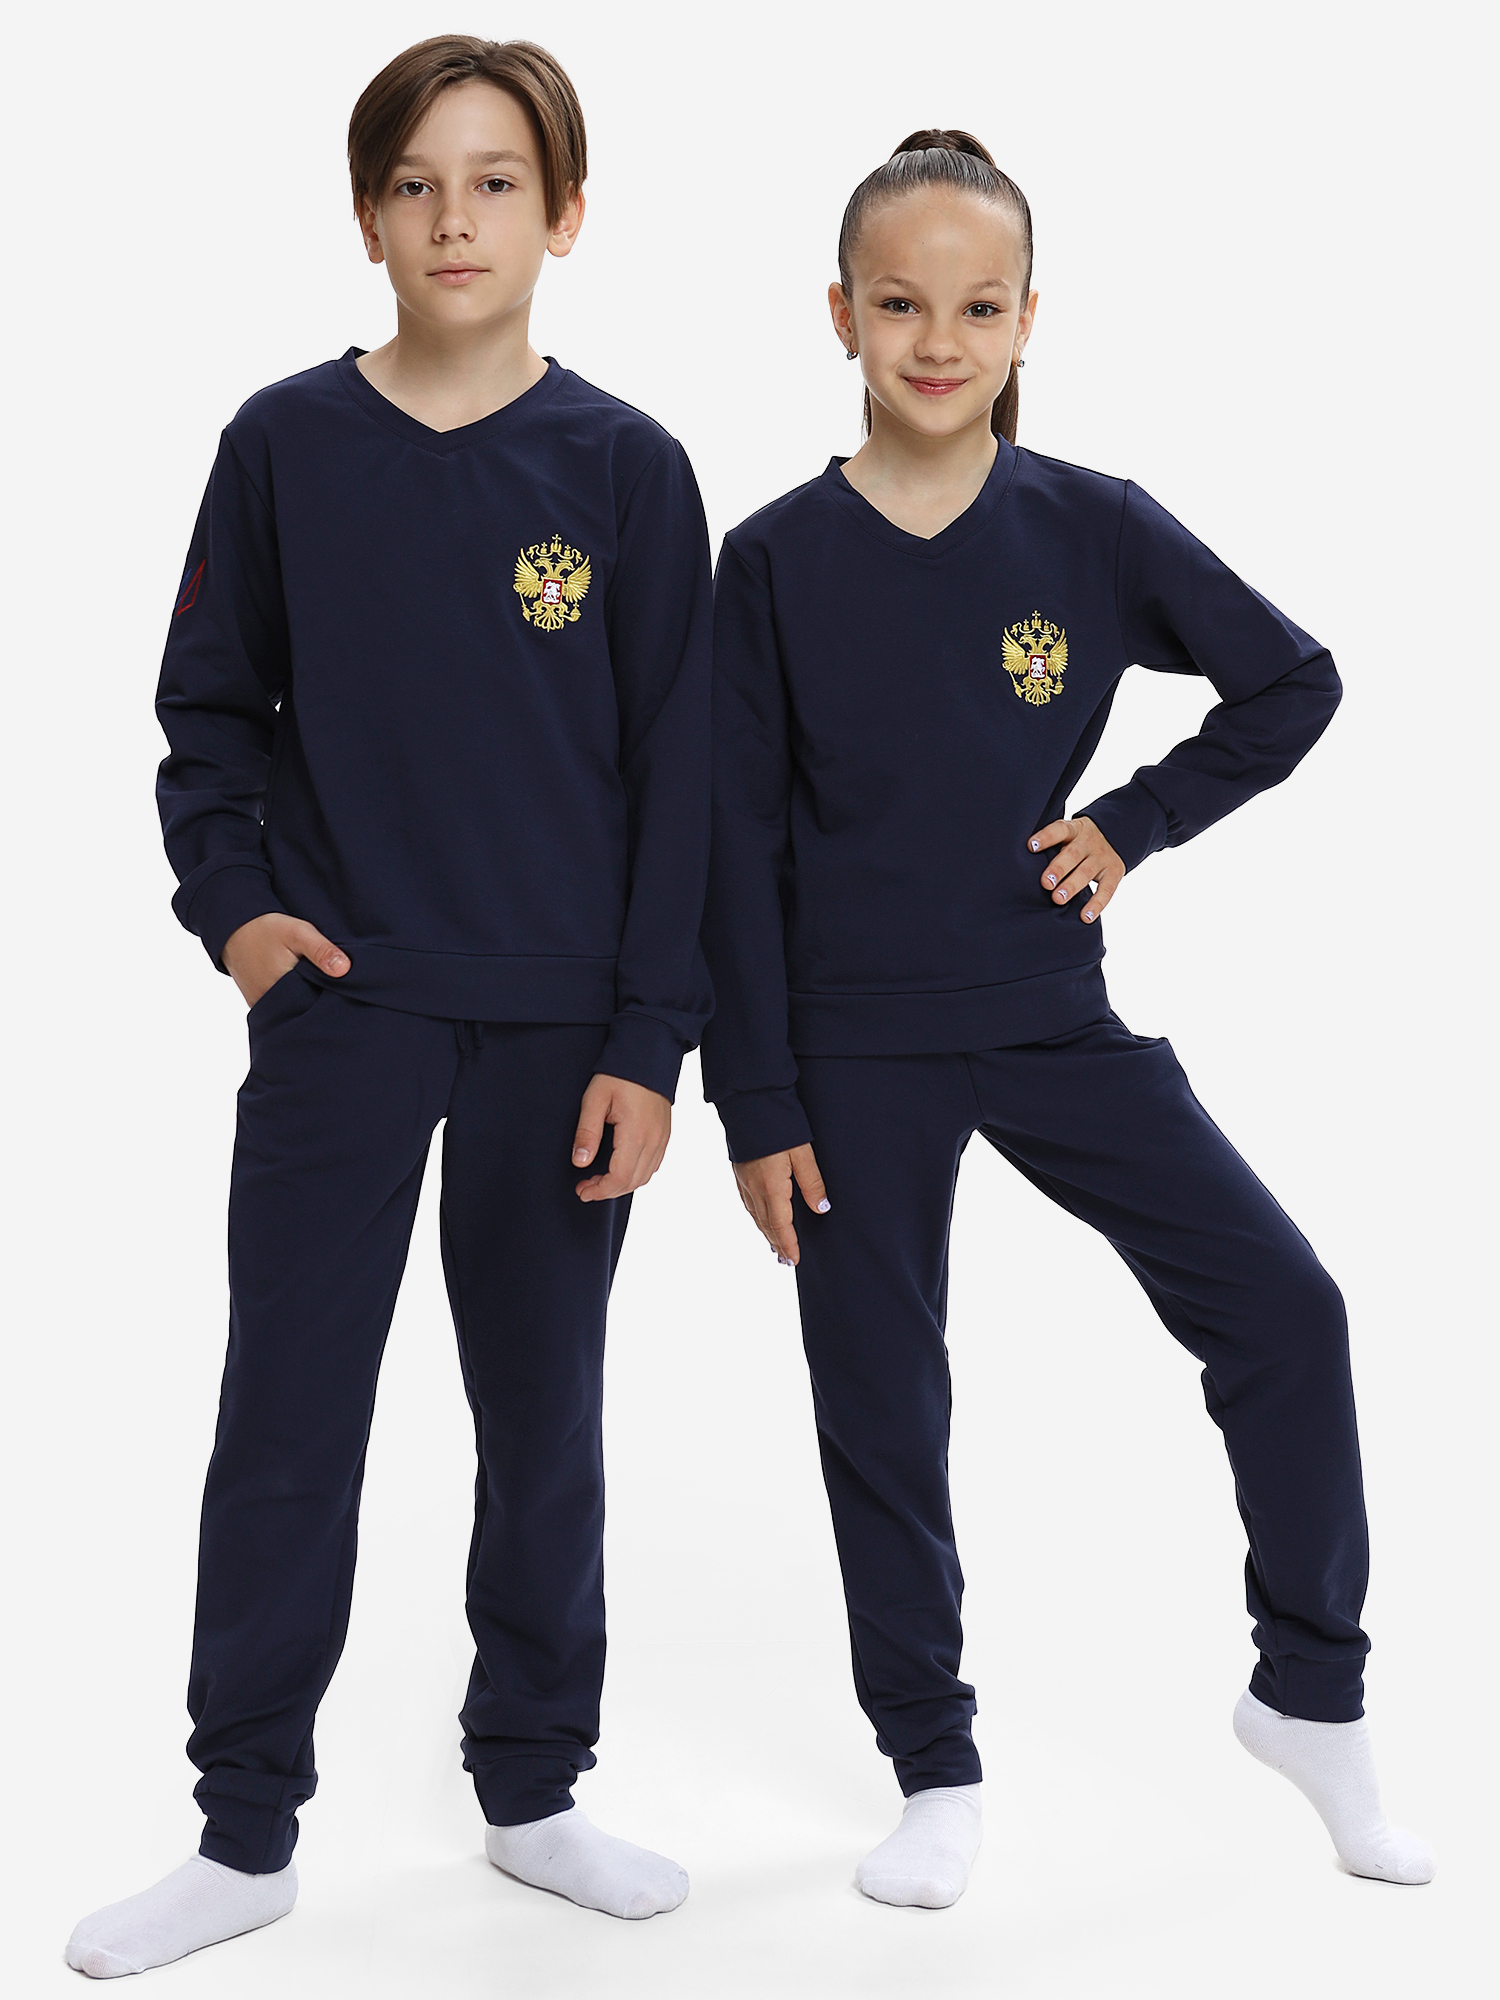 Спортивный костюм детский: для мальчика и девочки WILDWINS, Синий топ спортивный для занятий легкой атлетикой для девочки